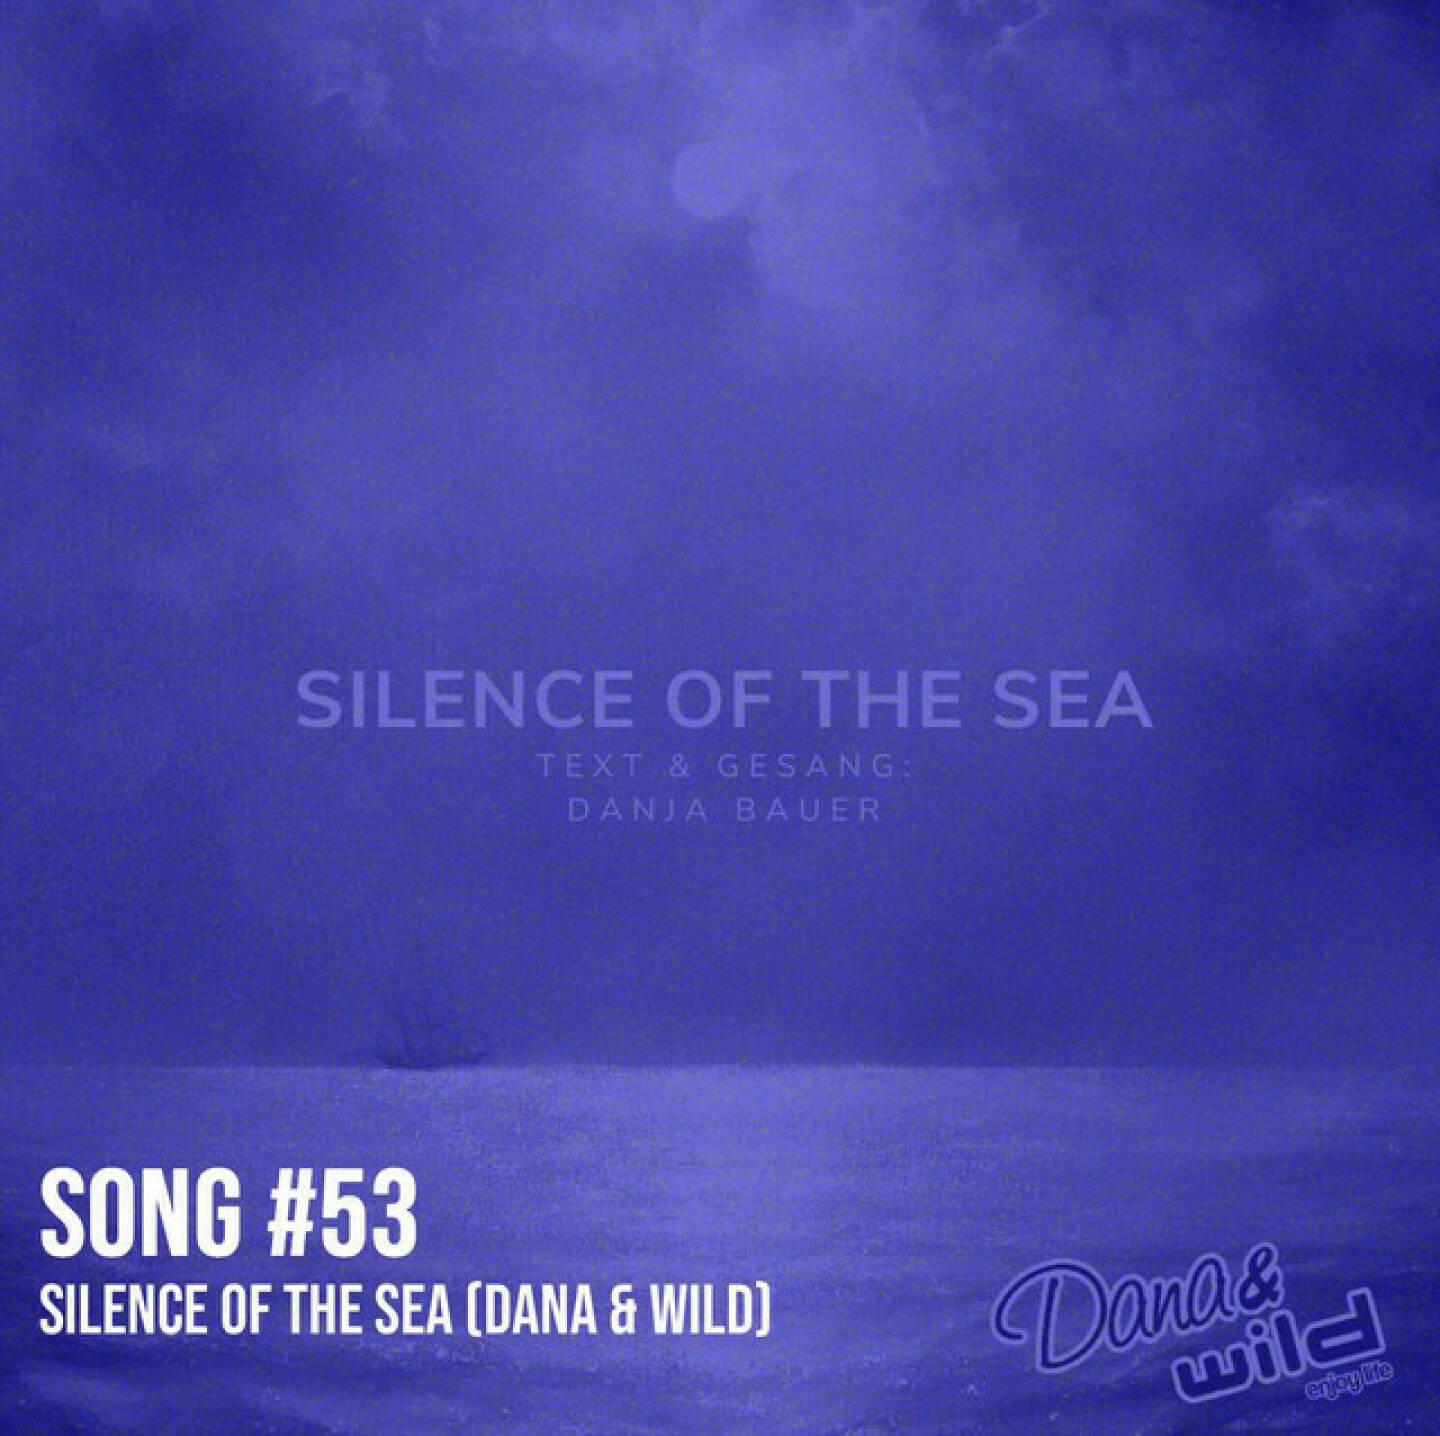 https://open.spotify.com/episode/71apjd4UFjLGWFyCFhQISo
Song #53: Silence of the Sea (Dana & Wild) - <p>Silence of the Sea ist eine Kompostion von Danja Bauer, die in der Börsepeople-Folge S13/05, Ausstrahlung am 7. Juni 2024, zu Gast ist. Danja ist Sängerin  Sprecherin, Moderatorin und hat auch im Kapitalmarkt gearbeitet. Ein Showcase für ihre Stimme ist auch dieser tolle Song ihres Projekts Dana &amp; Wild.<br/><br/><a href=http://www.danjabauer.com target=_blank>http://www.danjabauer.com</a><br/><br/>- mehr Songs: <a href=https://www.audio-cd.at/songs target=_blank>https://www.audio-cd.at/songs</a><br/><br/>- Playlist mit ein paar unserer Songs: <a href=https://open.spotify.com/playlist/63tRnVh3aIOlhrdUKvb4P target=_blank>https://open.spotify.com/playlist/63tRnVh3aIOlhrdUKvb4P</a><br/><br/>Bewertungen bei Apple (oder auch Spotify) machen mir Freude: <a href=http://www.audio-cd.at/apple target=_blank>http://www.audio-cd.at/apple</a> <a href=http://www.audio-cd.at/spotify target=_blank>http://www.audio-cd.at/spotify</a></p>